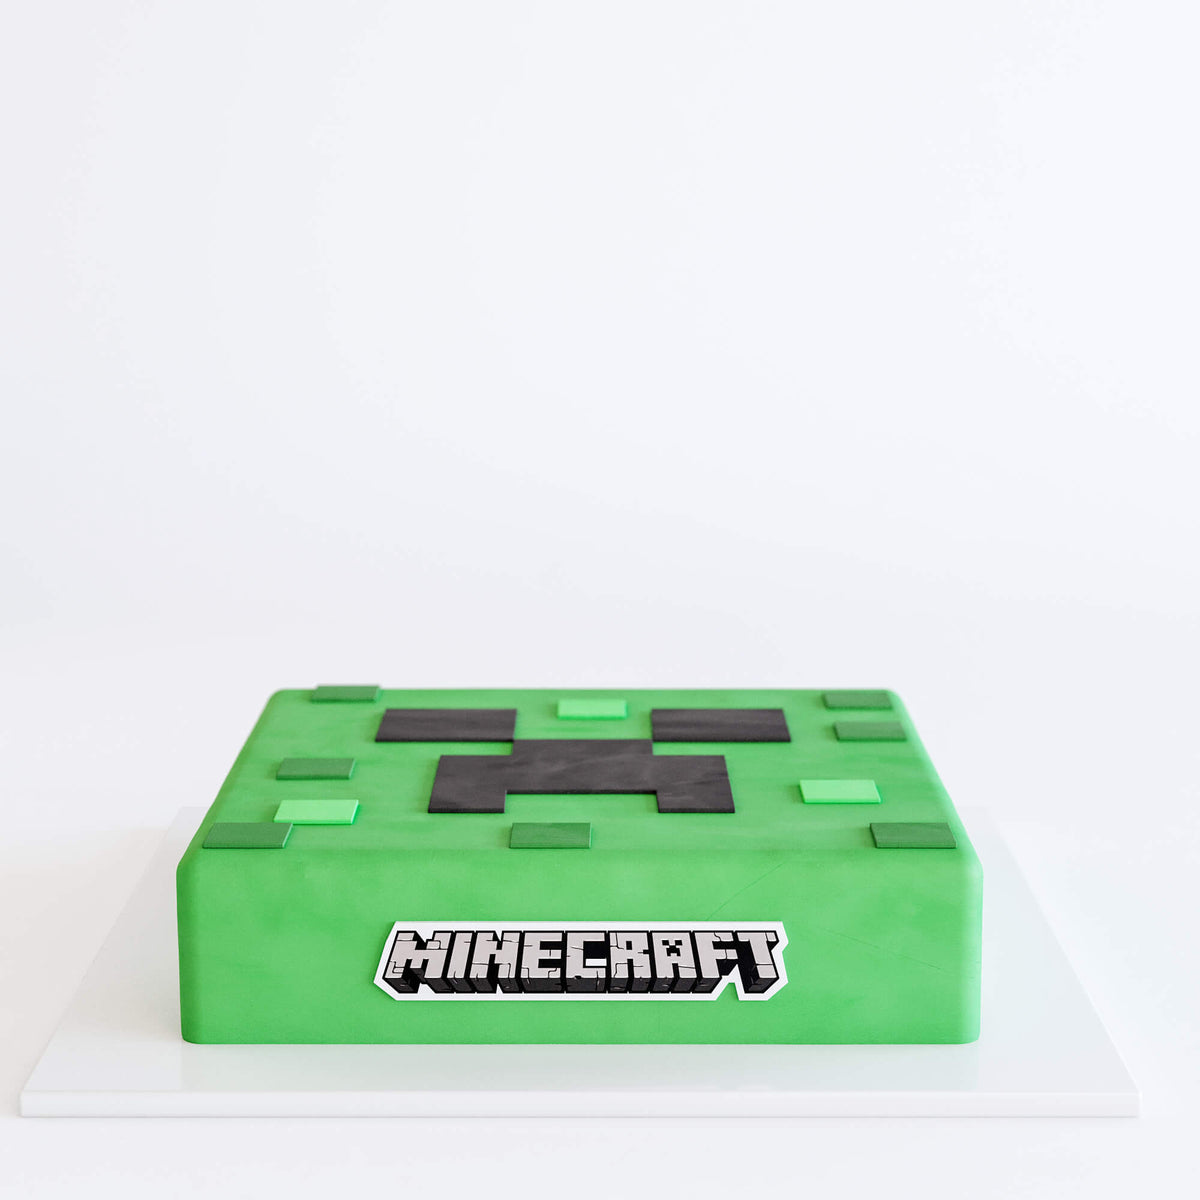 Bolo de Camadas do Minecraft